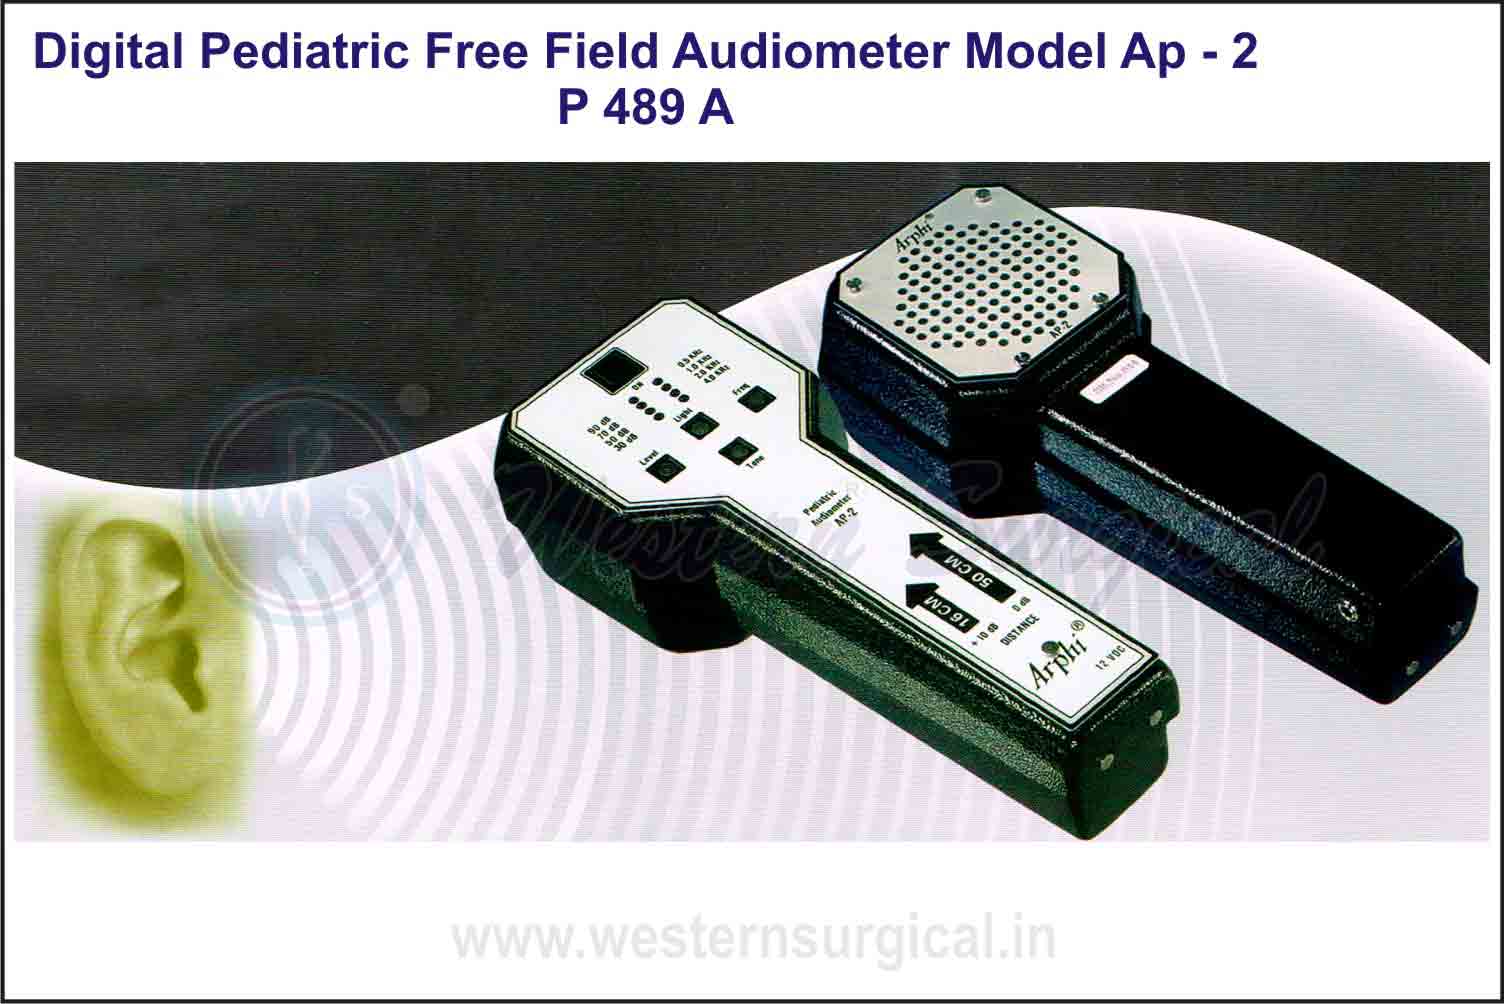 DIGITAL PEDIATRIC FREE FIELD AUDIOMETER MODEL AP - 2